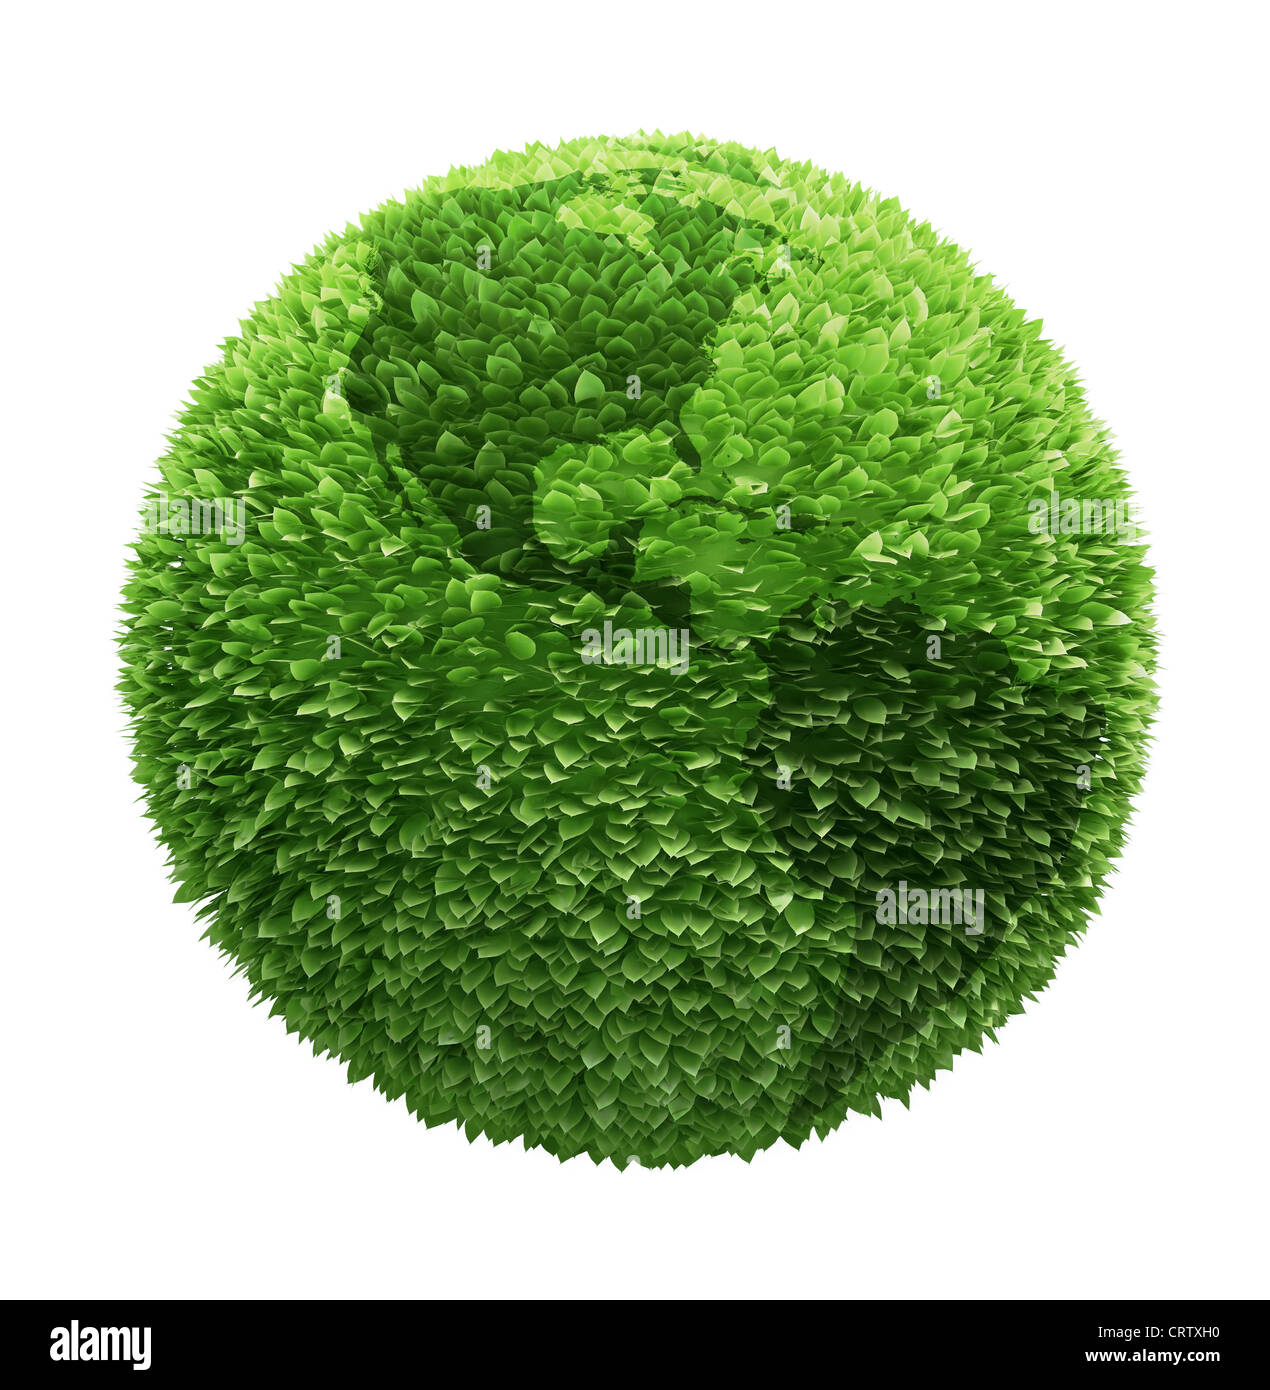 Globo terrestre coperto con foglie con contorni dei continenti Foto Stock